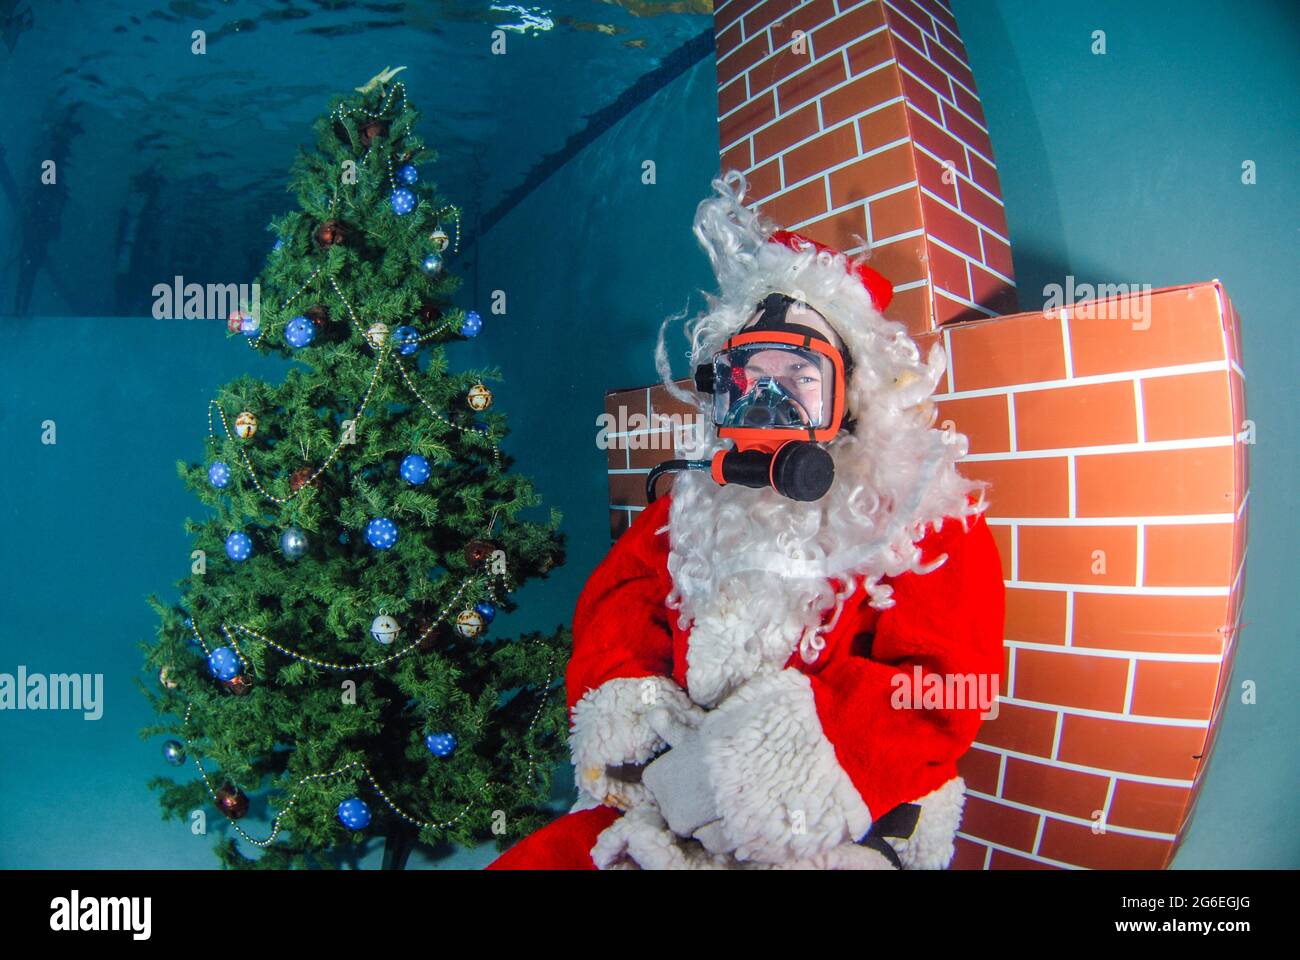 Imagen submarina de Santa Claus en el buceo con un árbol de Navidad y chimenea roja Foto de stock